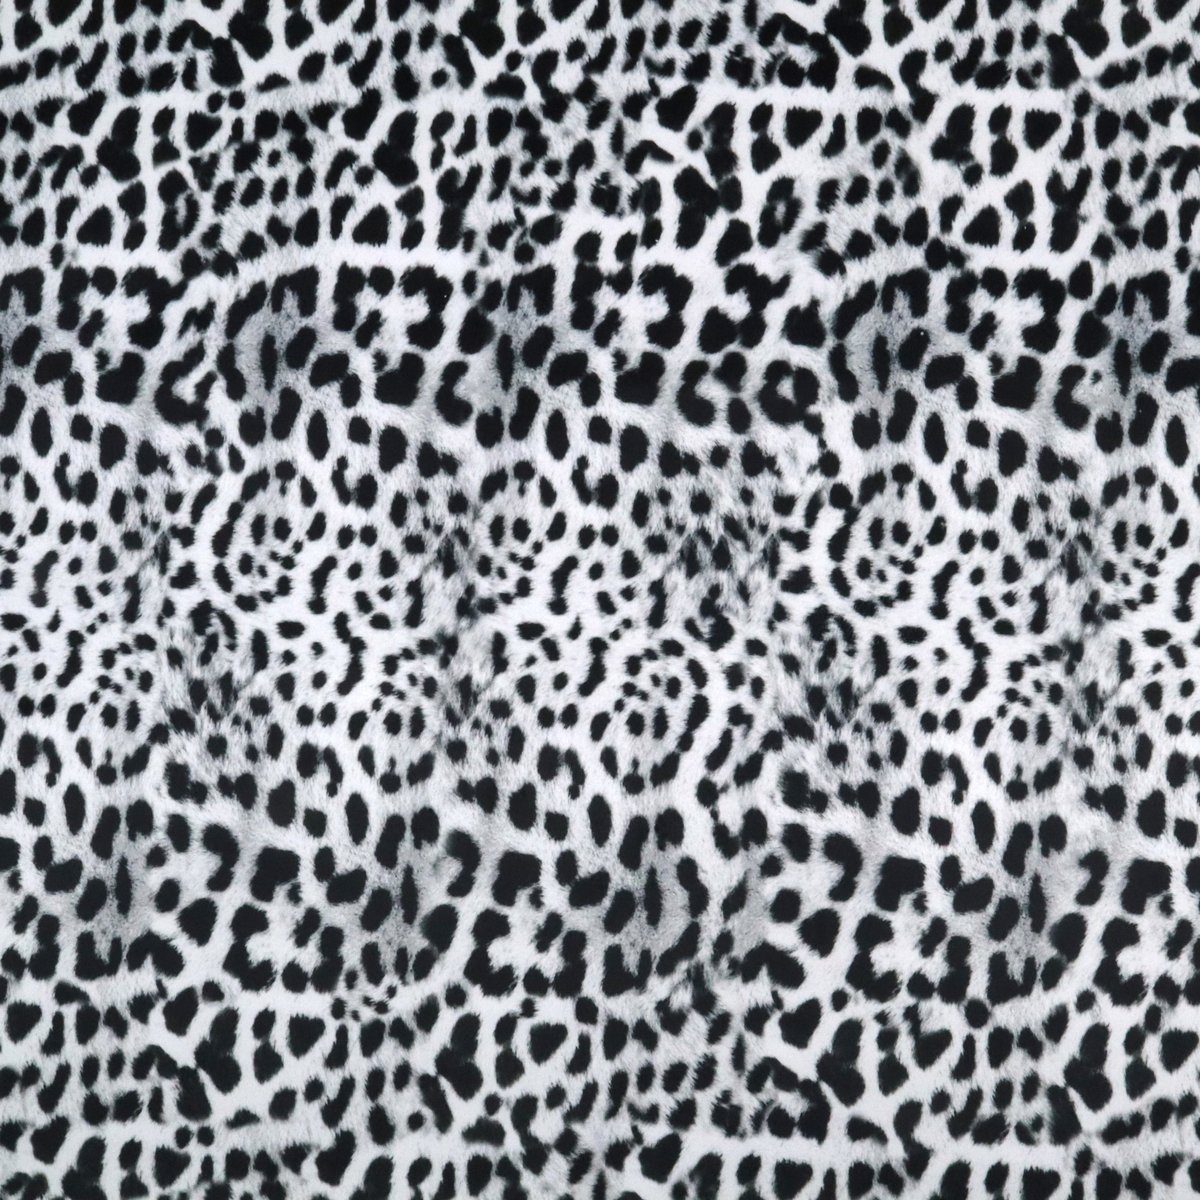 Stofferia Stoff Polsterstoff Samt-Digitaldruck Gepard Schwarz-Weiß, Breite 140 cm, Meterware